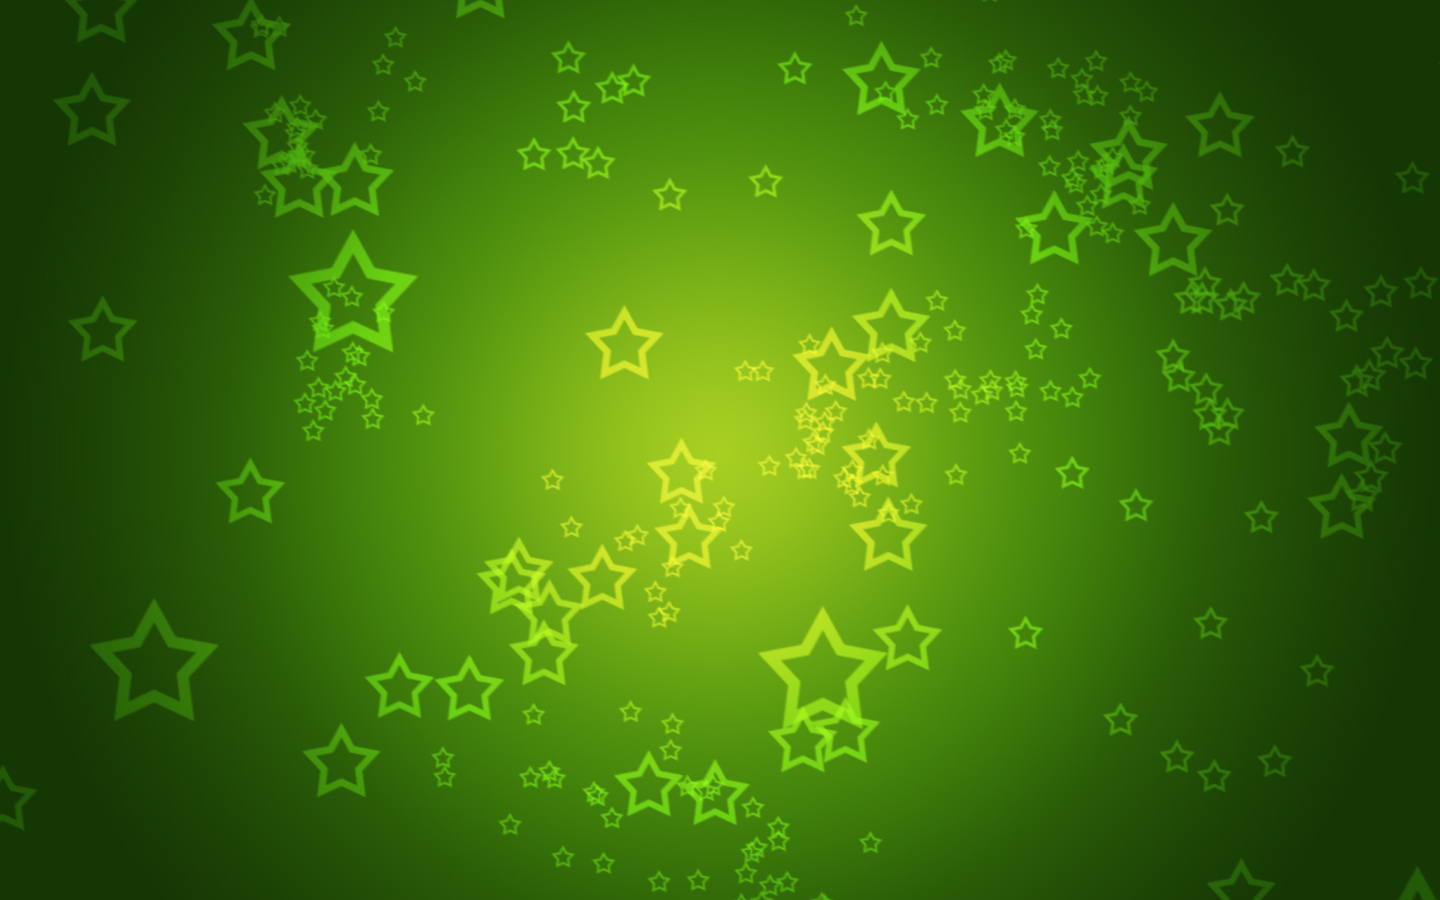 Das Green Stars Wallpaper 1440x900